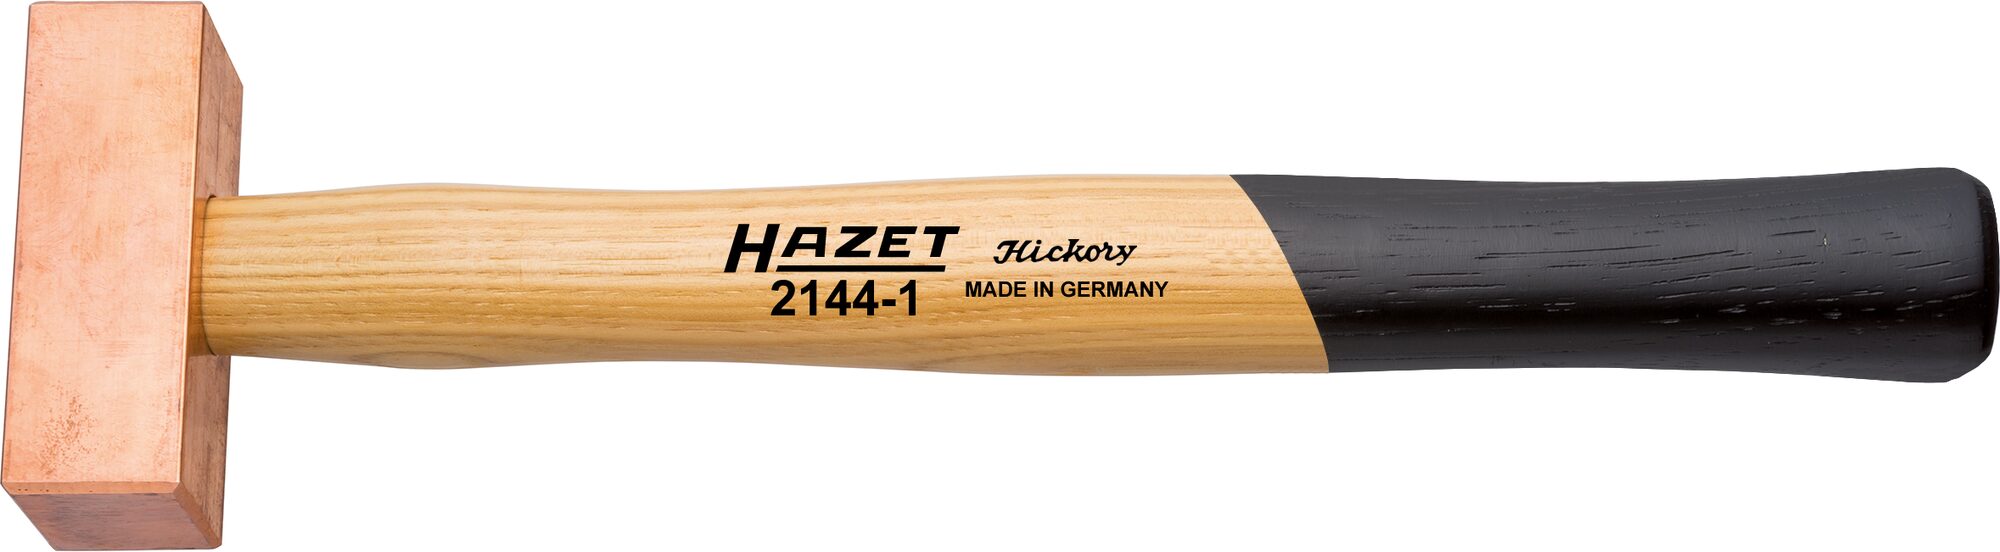 HAZET Kupferhammer 2144-2